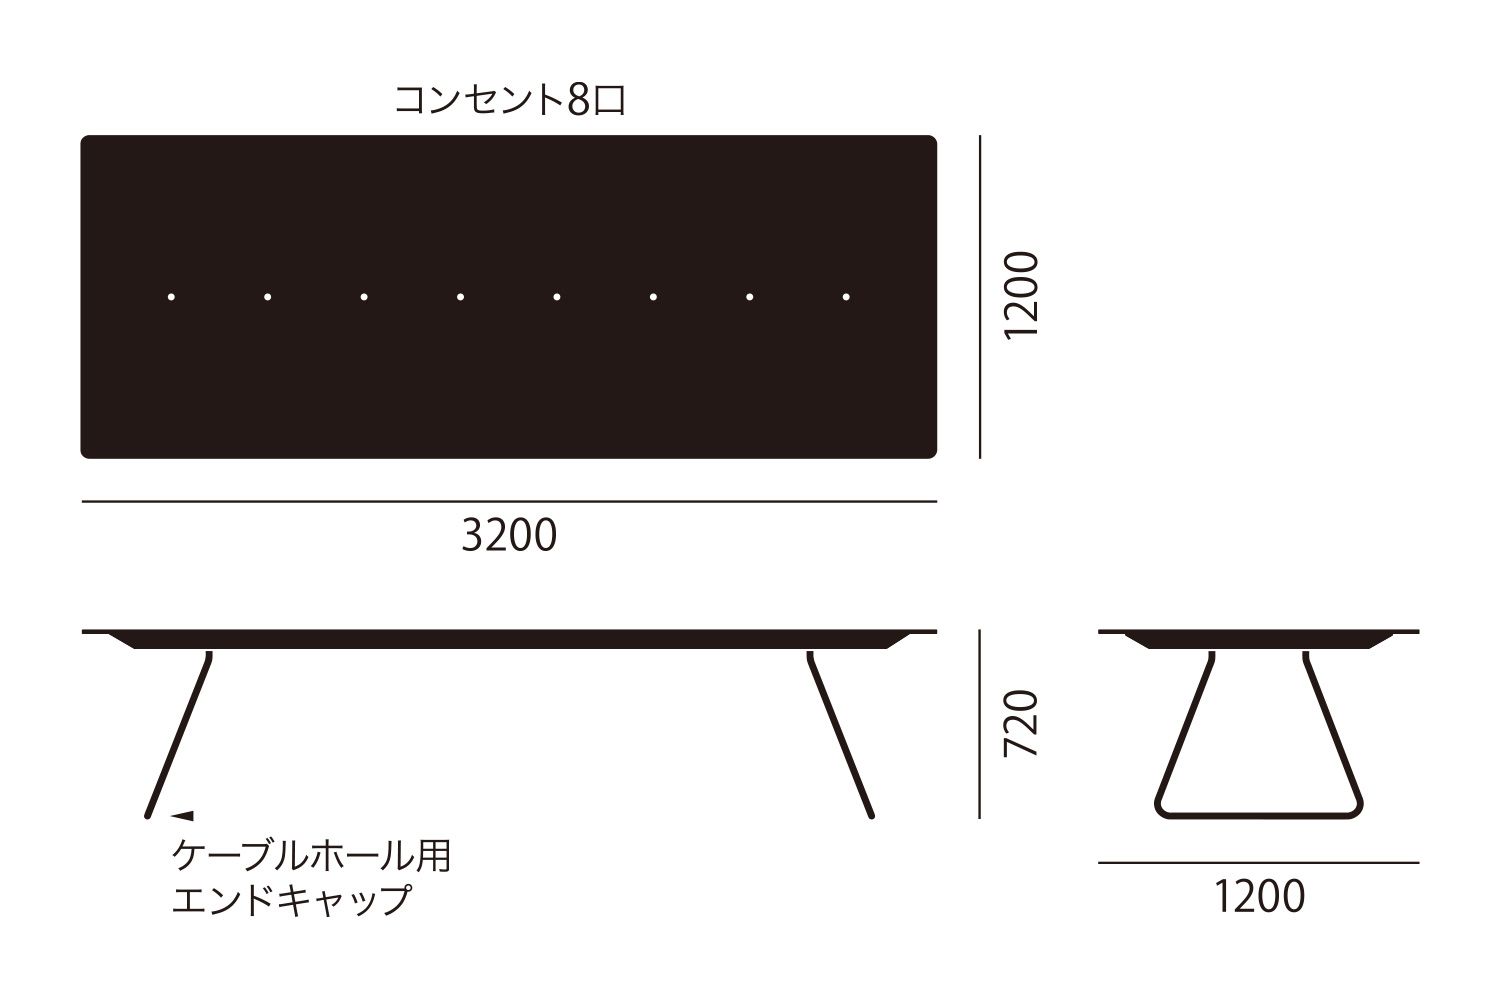 アイプラス 006: ミーティングテーブル 320cm サイズ詳細